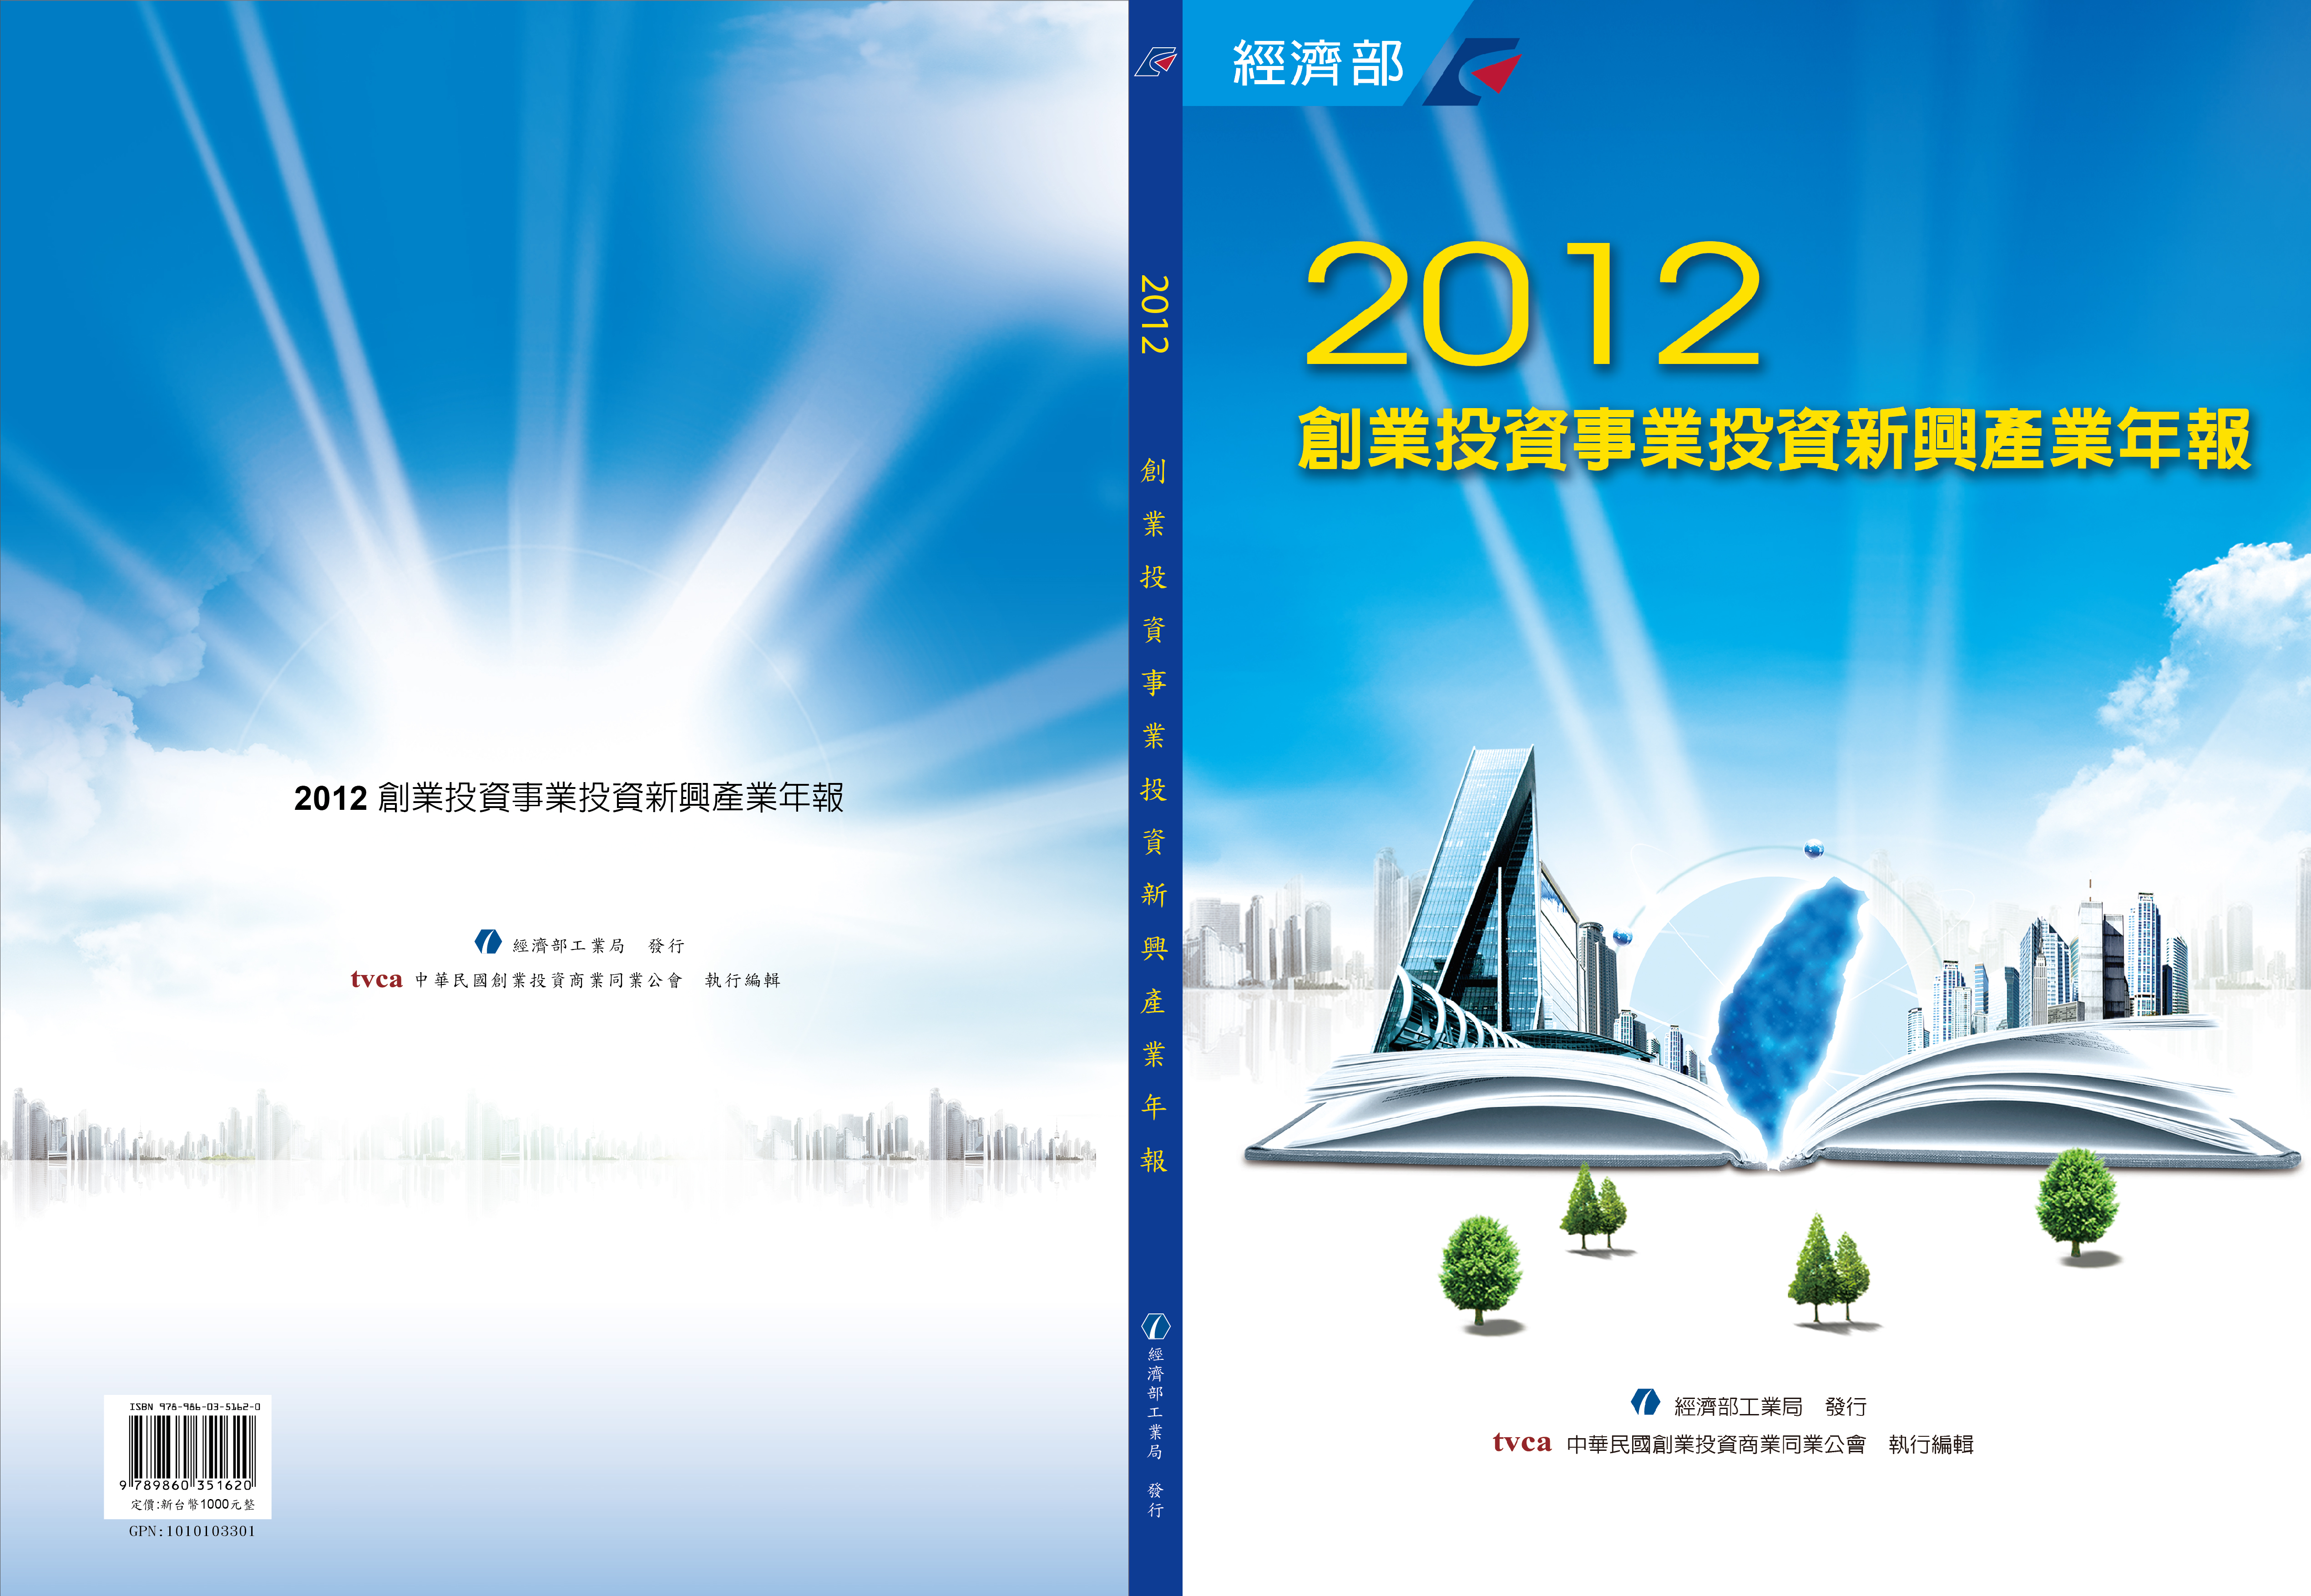 2012創業投資事業投資新興產業年報